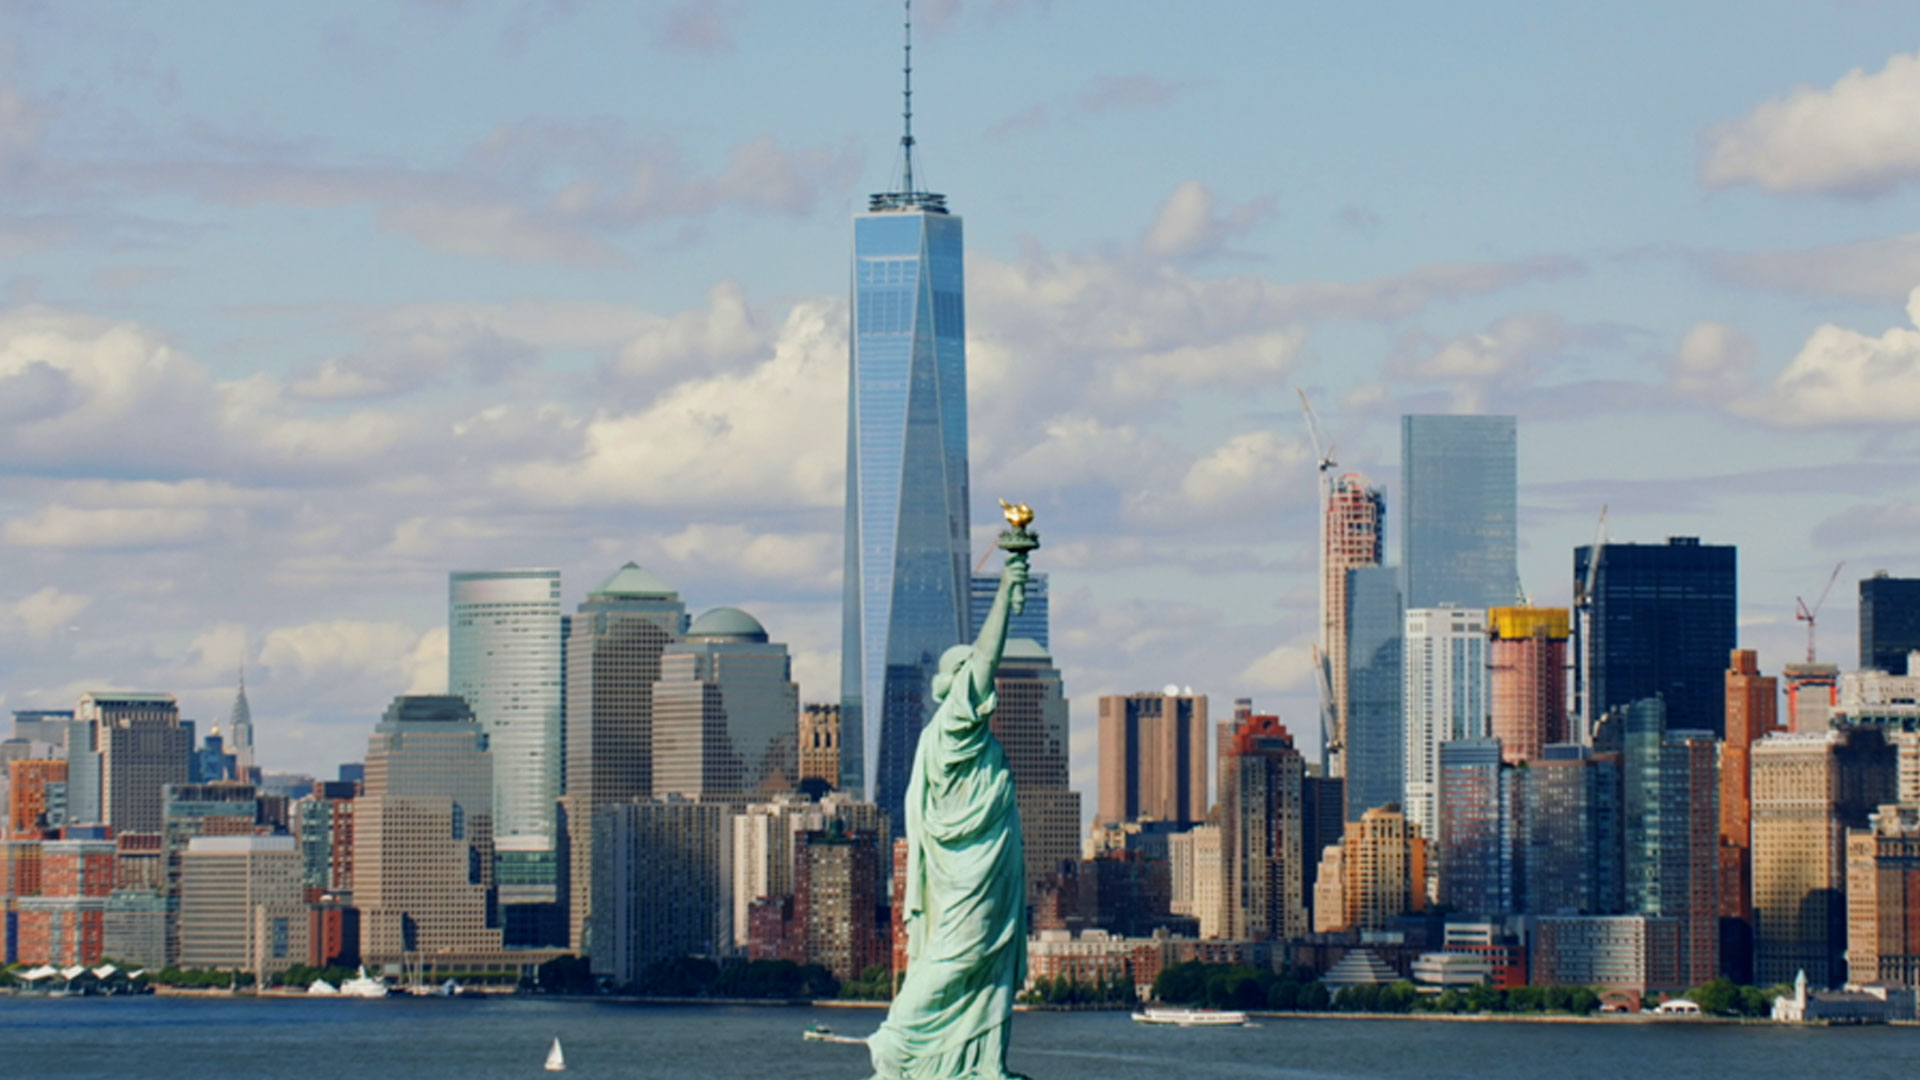 One world new york. ВТЦ 1 Нью-Йорк. Башня свободы в Нью-Йорке. Всемирный торговый центр 1 Нью-Йорк. Башня свободы Манхэттен.